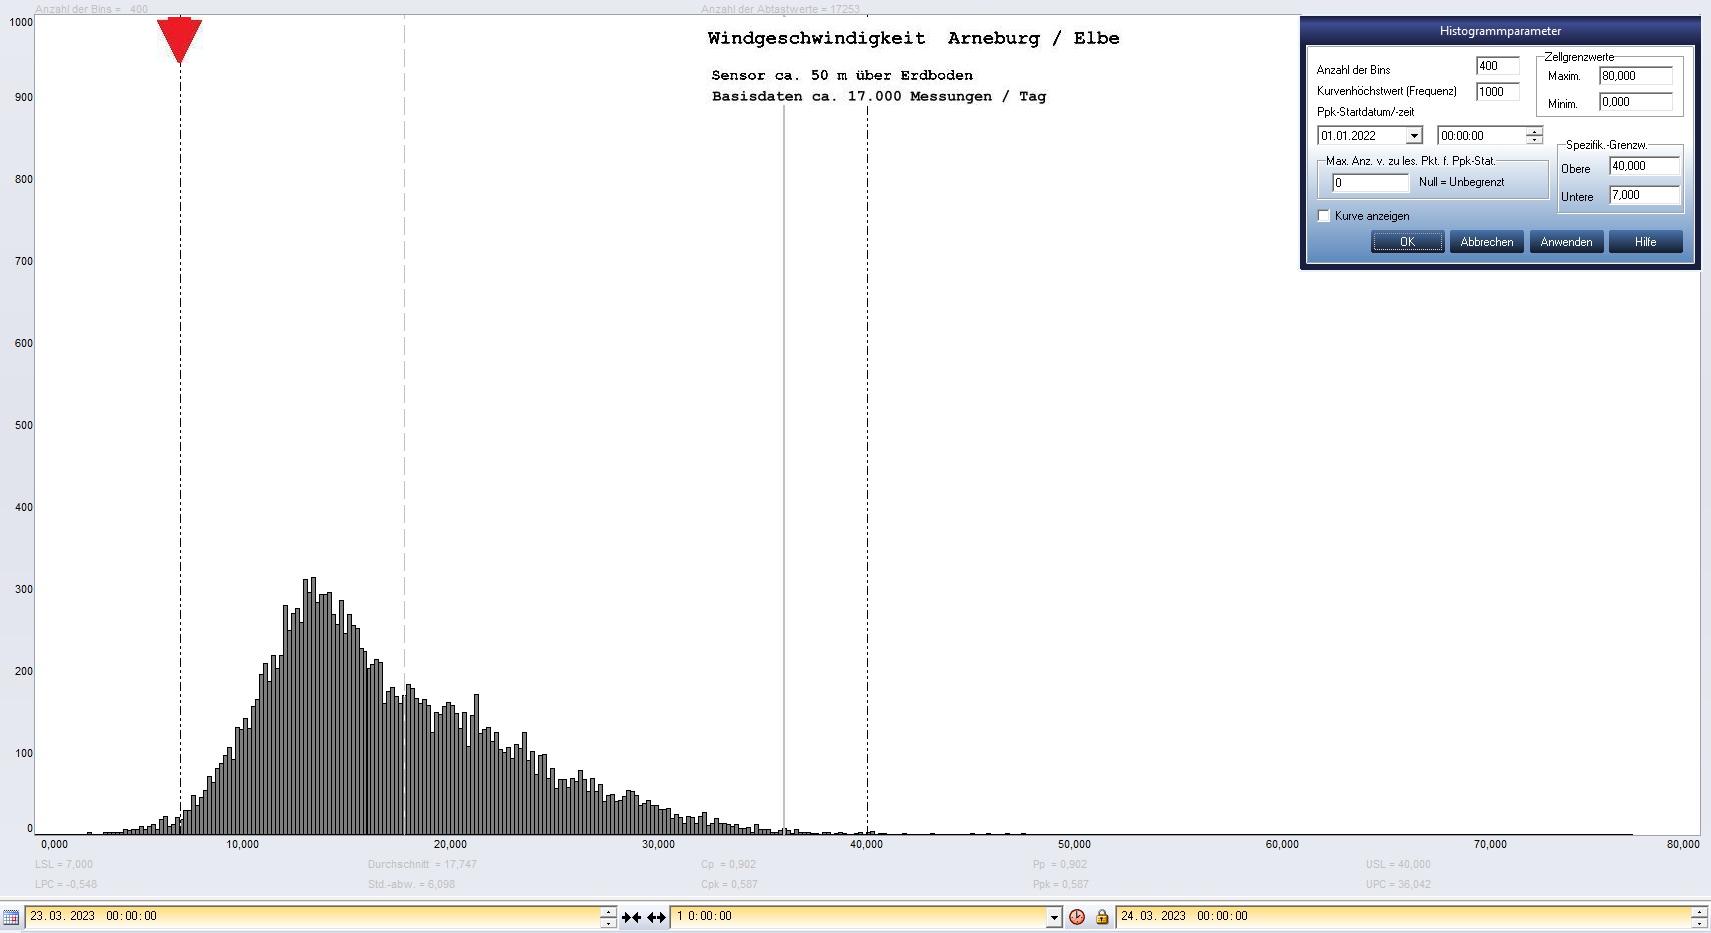 Arneburg Tages-Histogramm Winddaten, 23.03.2023
  Histogramm, Sensor auf Gebude, ca. 50 m ber Erdboden, Basis: 5s-Aufzeichnung